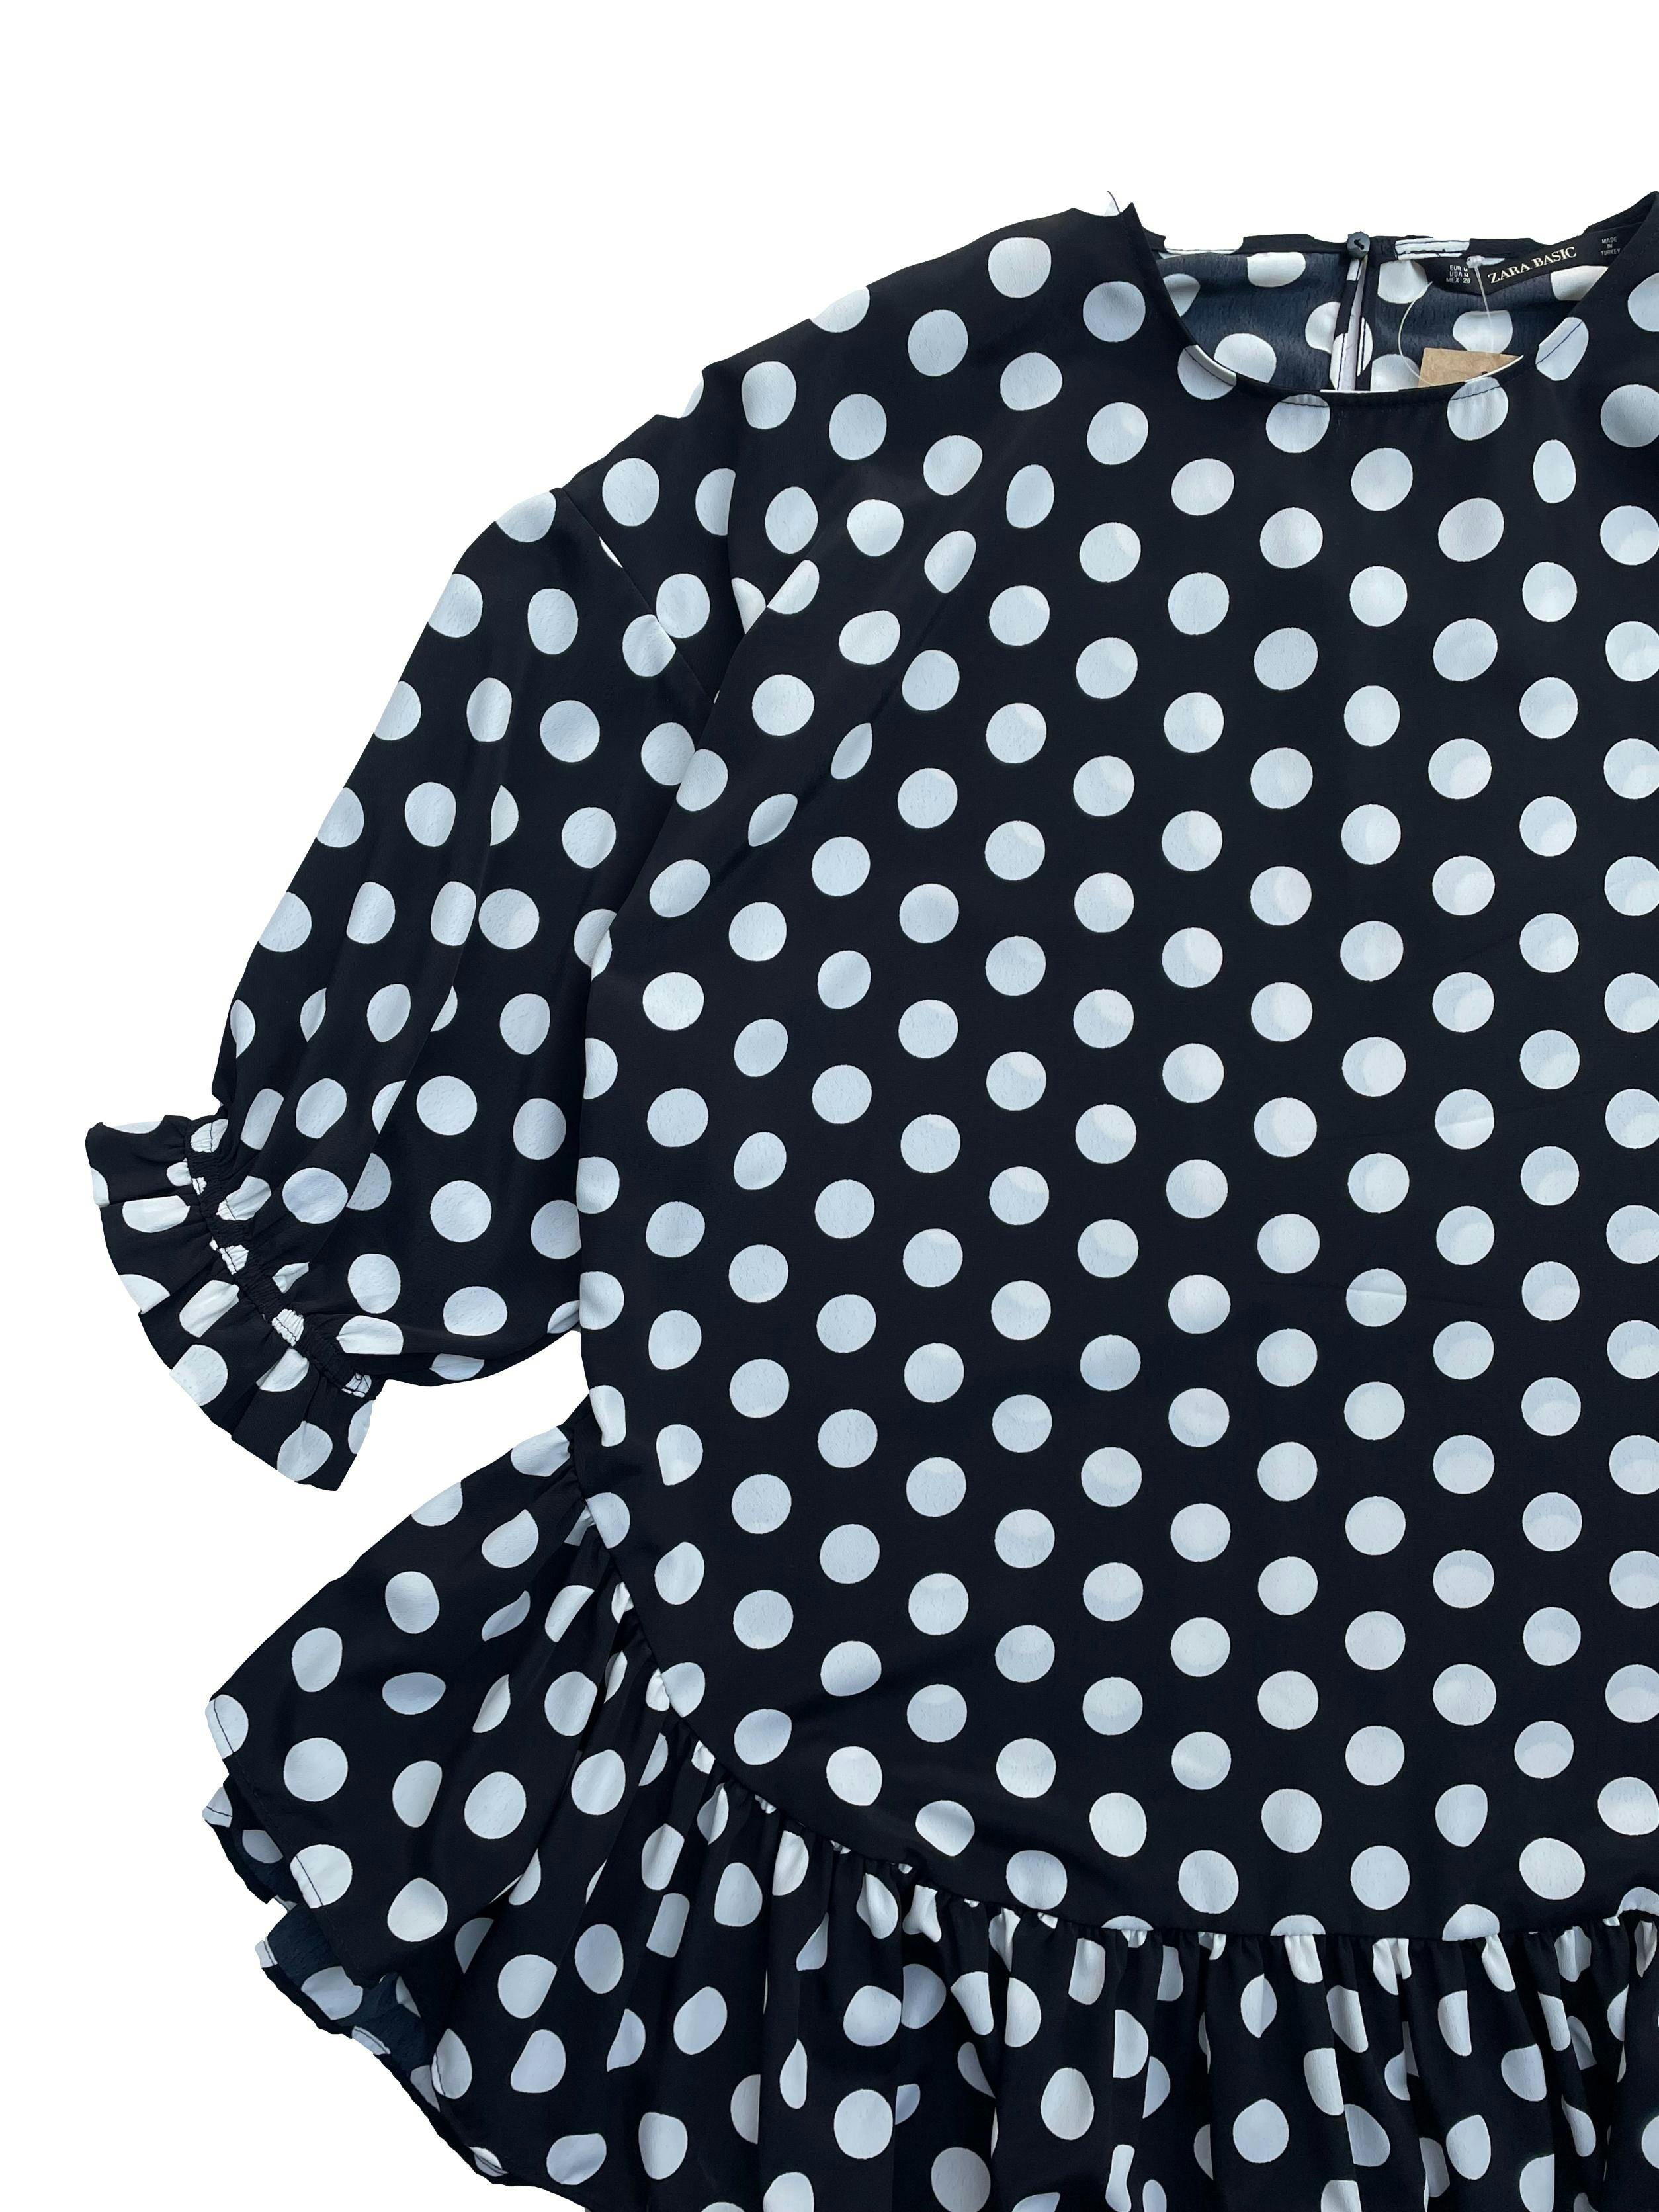 Blusón Zara negro con polka dots blancos , mangas 3/4 con elástico, volantes en basta y abertura con botón en la espalda. Busto 116cm, Largo 65cm.